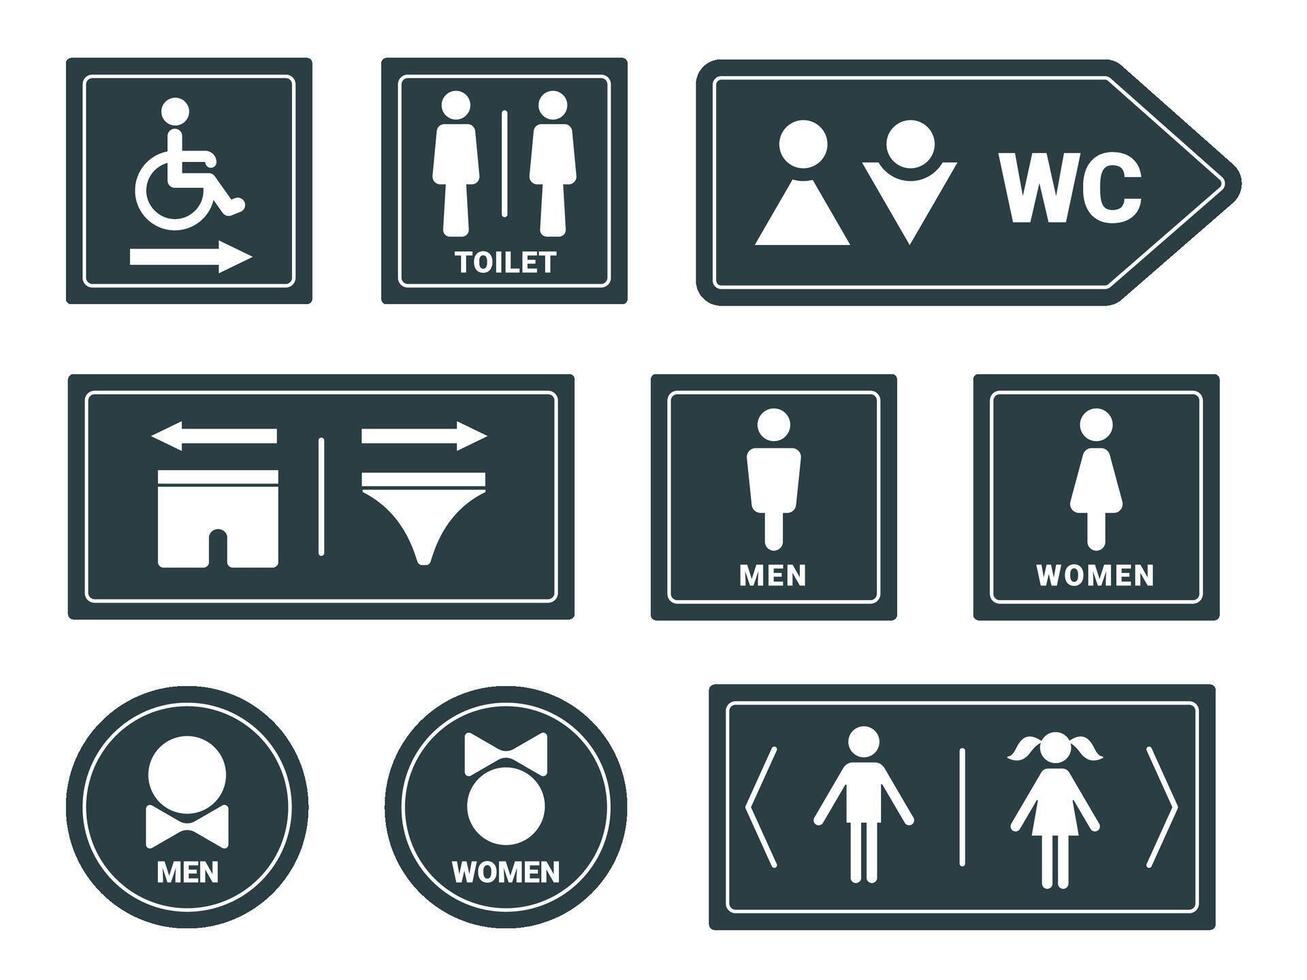 man och kvinna toalett, badrum eller toalett tecken med pilar. Inaktiverad person toalett ikon. toalett design med kalsonger, kön piktogram vektor uppsättning